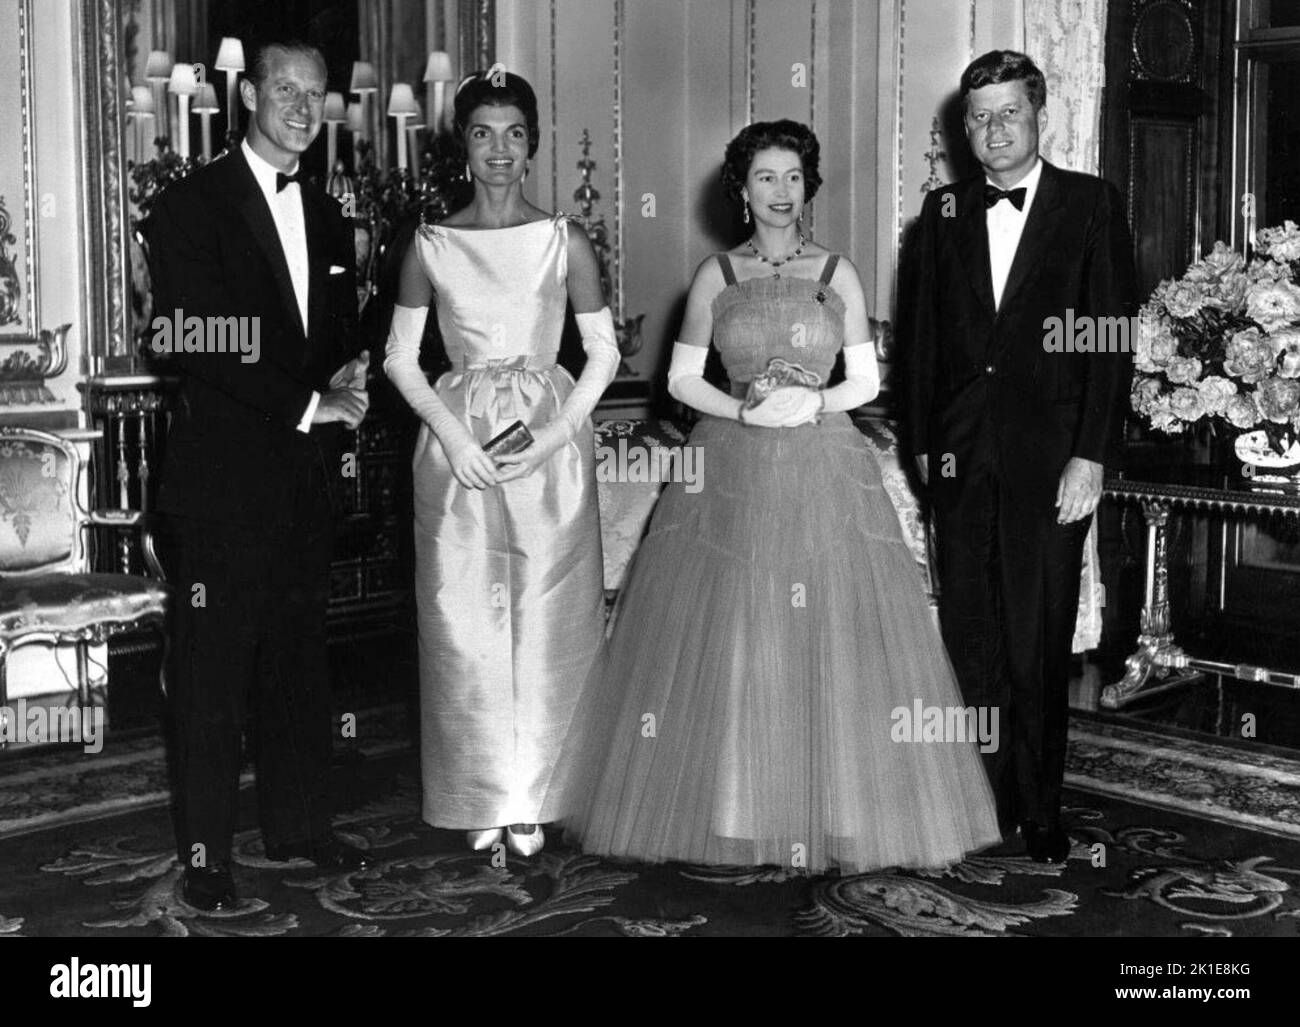 Gruppenportrait mit Prinz Philip, Herzog von Edinburgh, Jacqueline Kennedy, Königin Elizabeth II. Und US-Präsident John F. Kennedy am 5. Juni 1961 im Buckingham Palace. Stockfoto